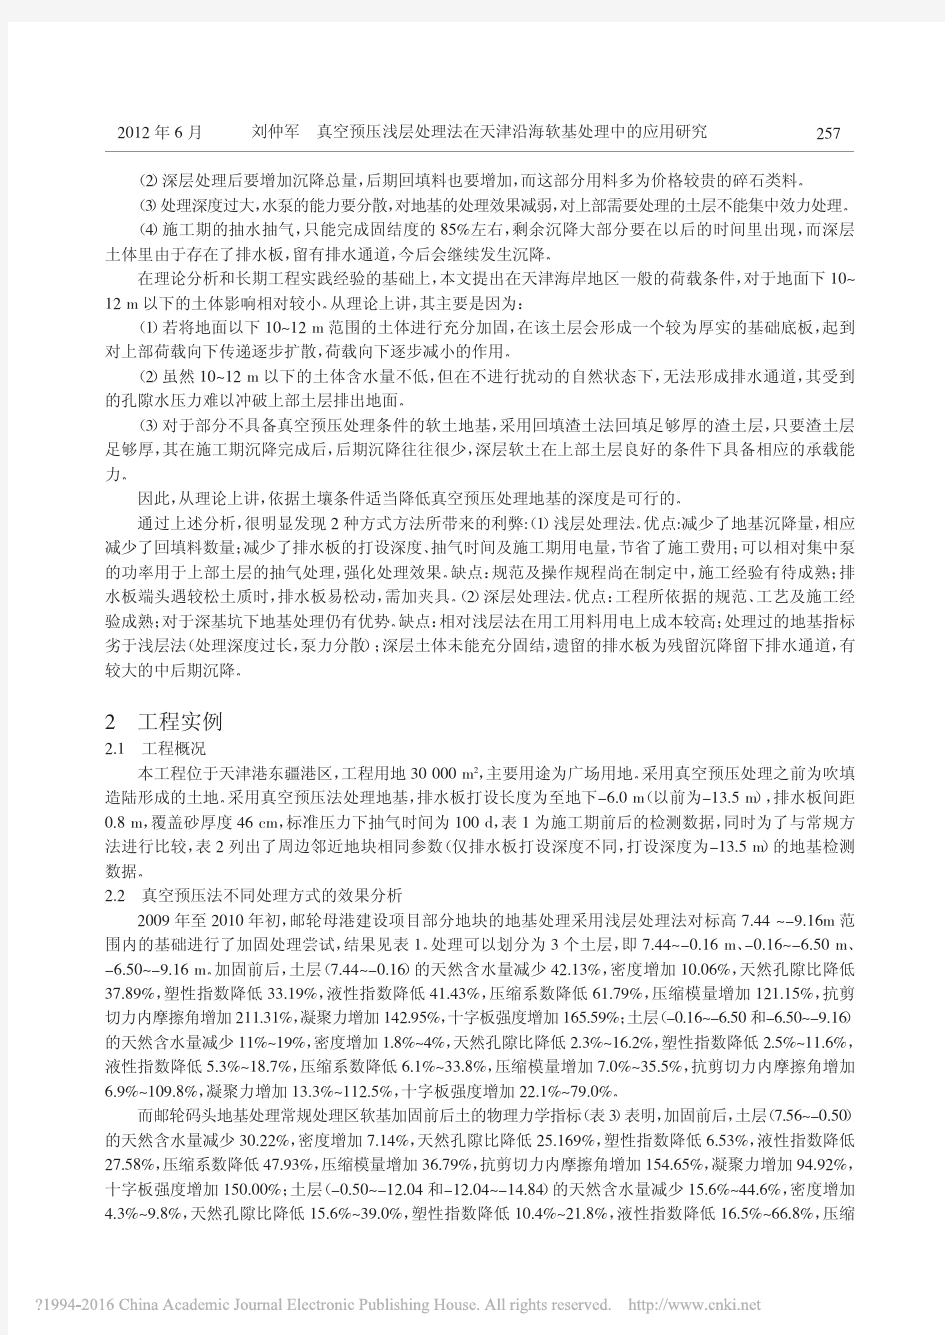 真空预压浅层处理法在天津沿海软基处理中的应用研究_刘仲军